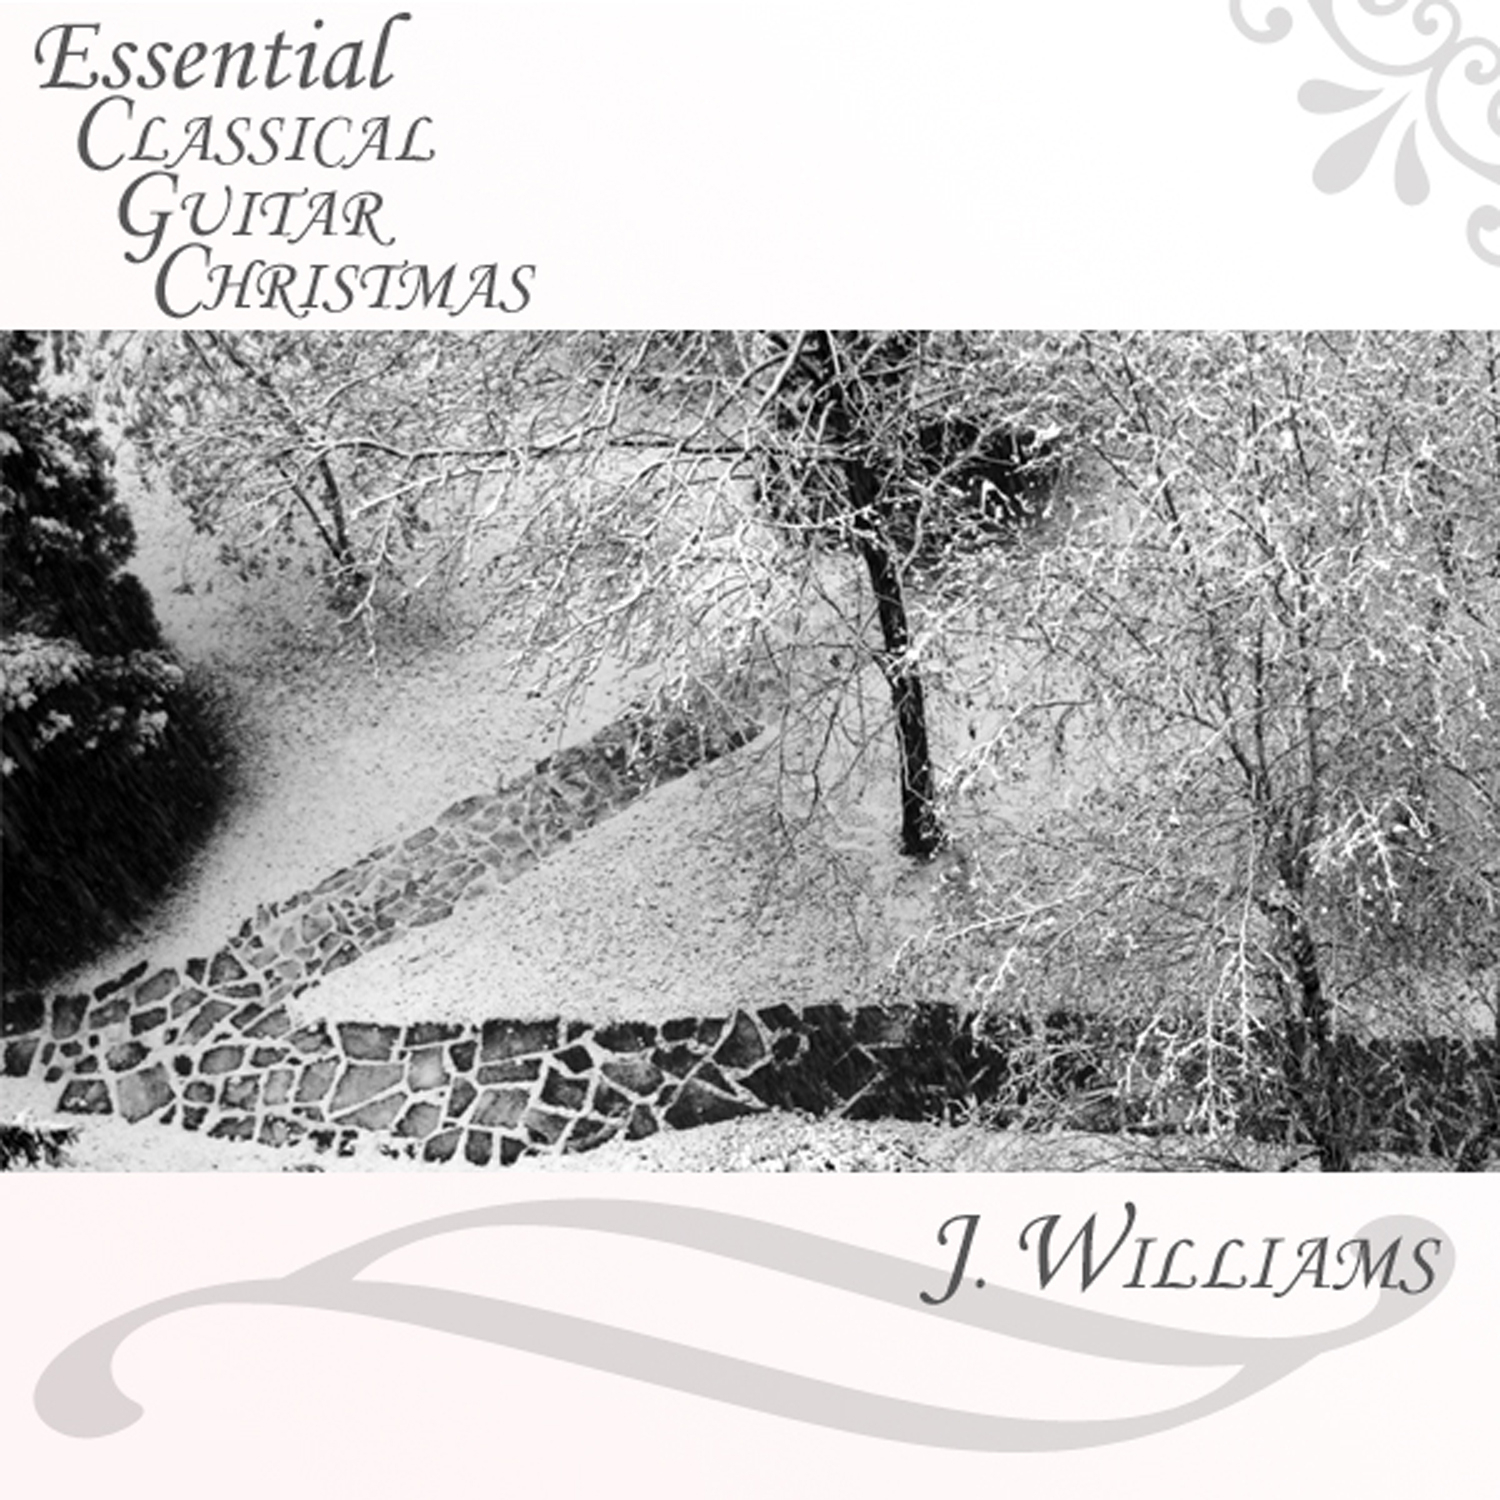 Essential Classical Guitar Christmas